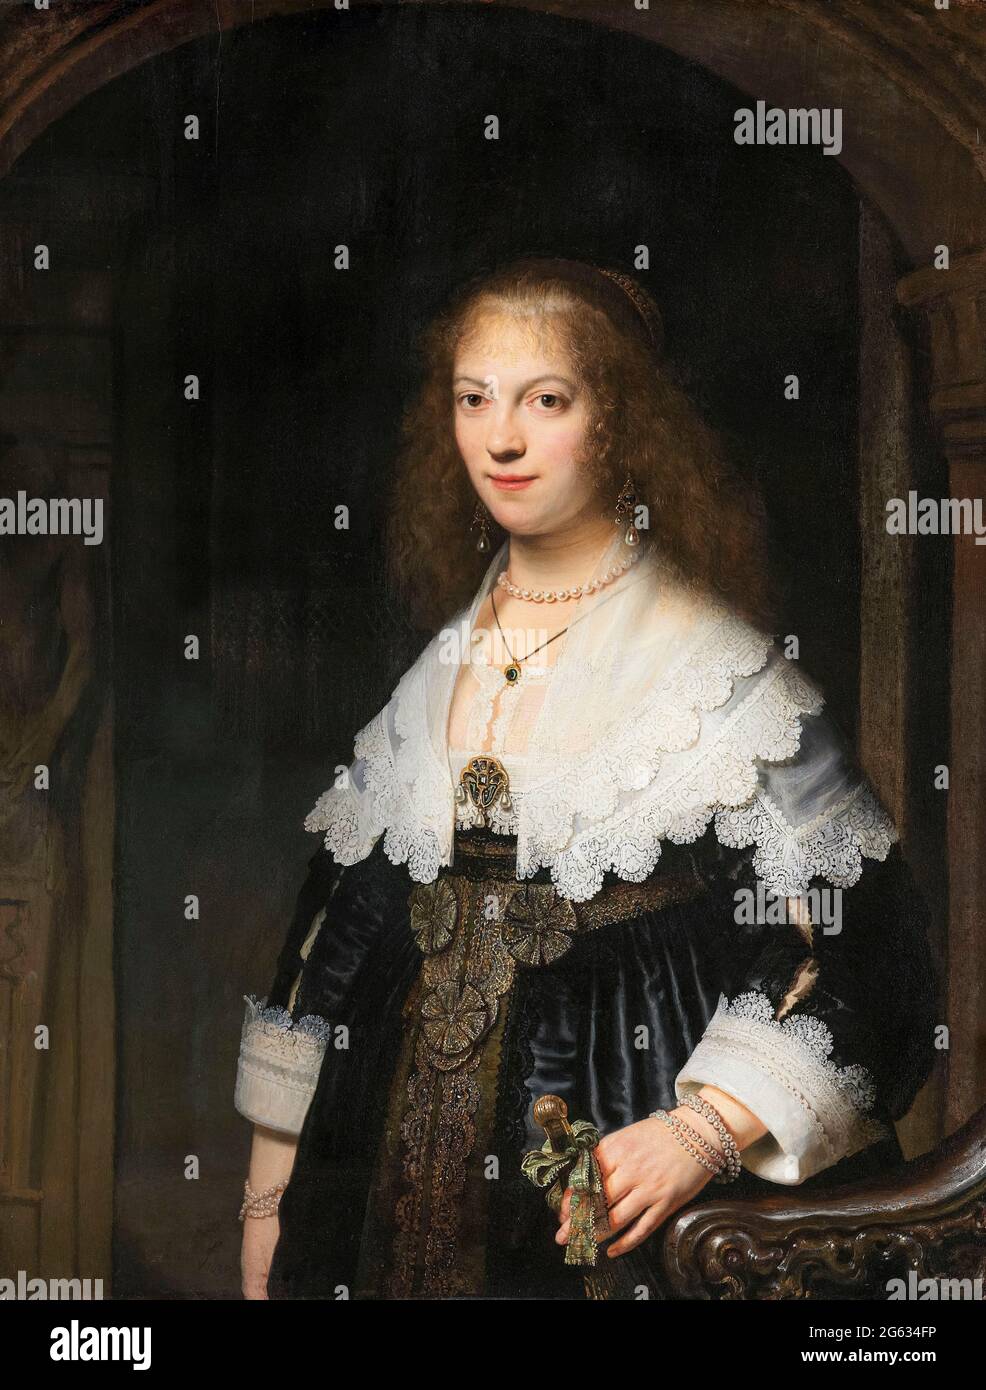 Rembrandt van Rijn, Retrato de una mujer, posiblemente Maria Trip, pintura, 1639 Foto de stock